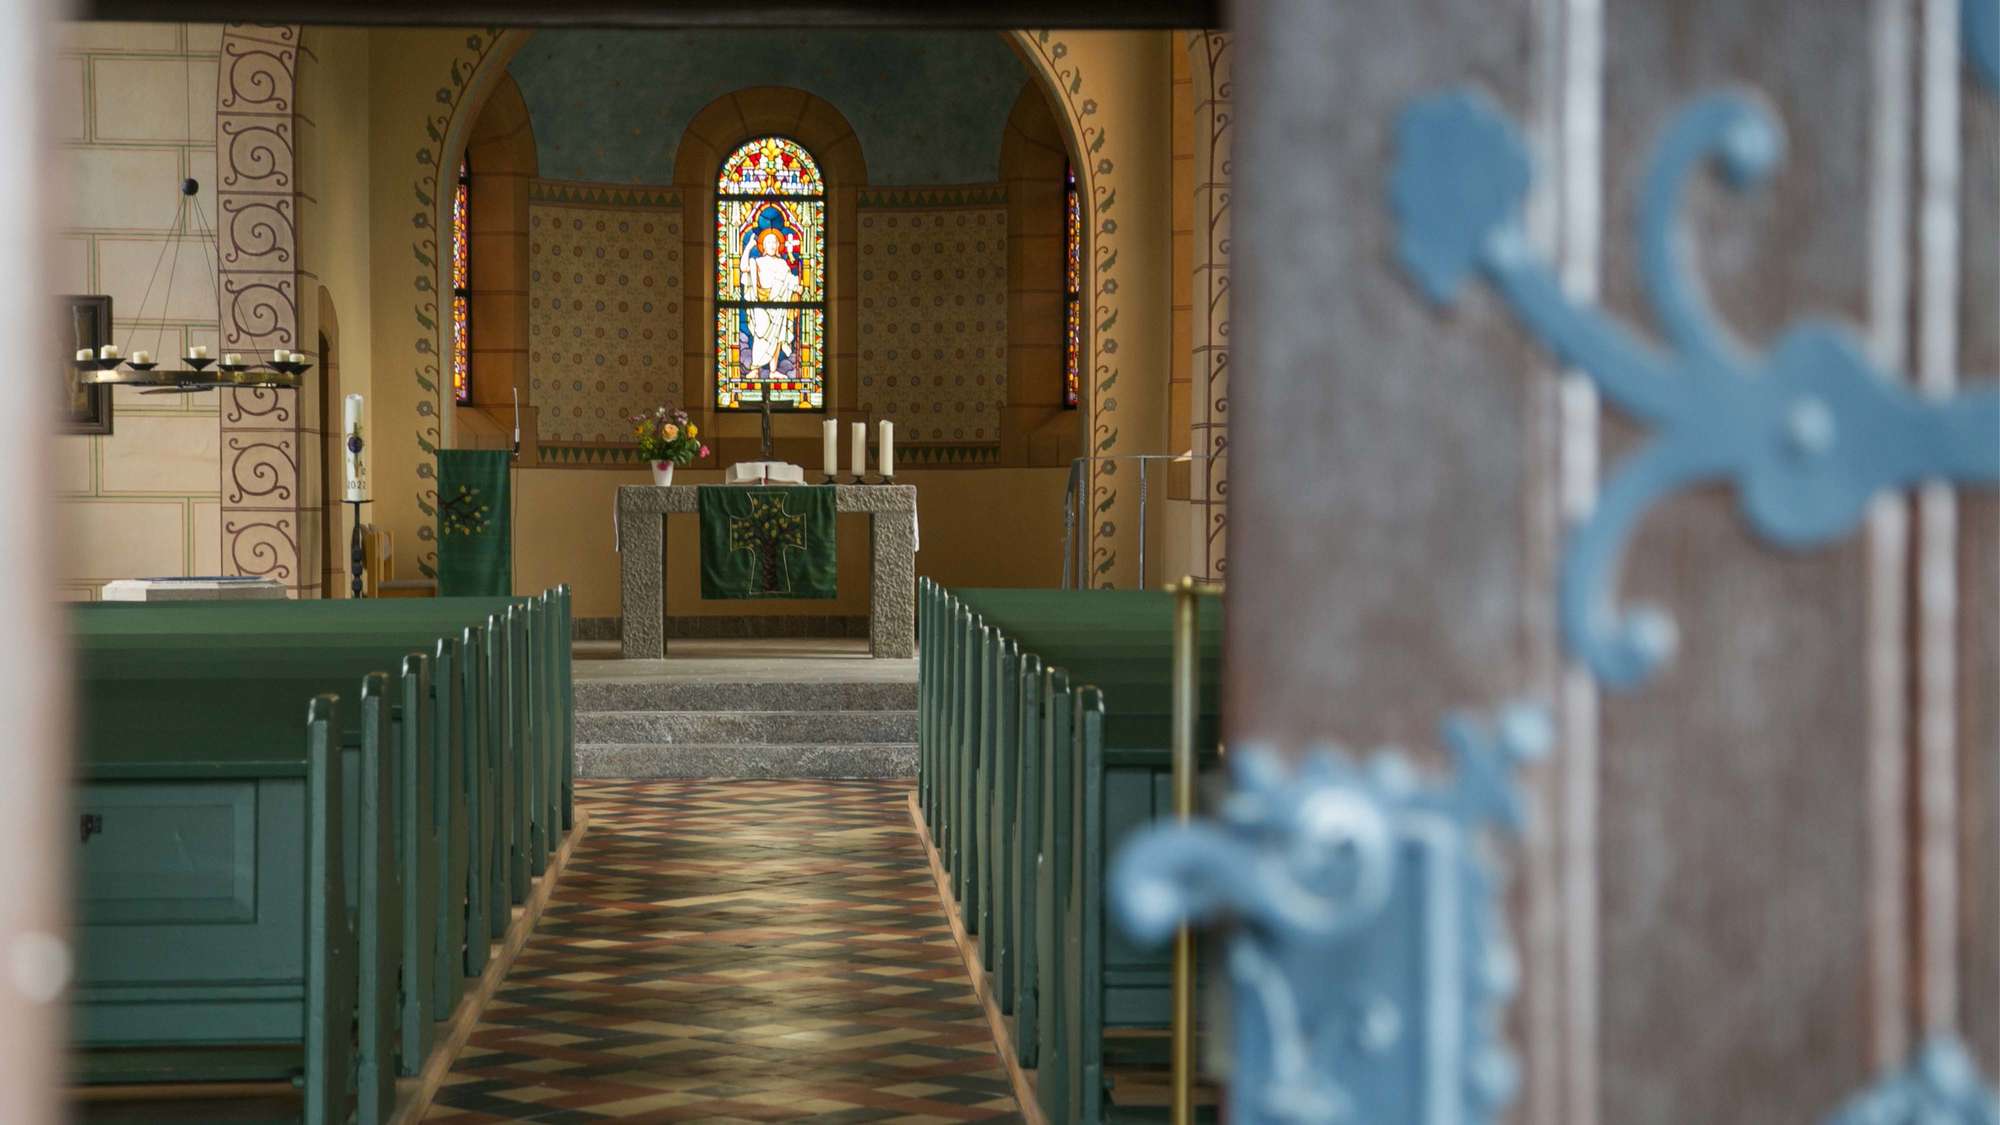 Im Vordergrund rechts die Eingangstür zur Kirche. Bunte Bodenfliesen, Verzierungen am Bogen. Helle Fenster, im Altarraum hellgrauer Steinboden.